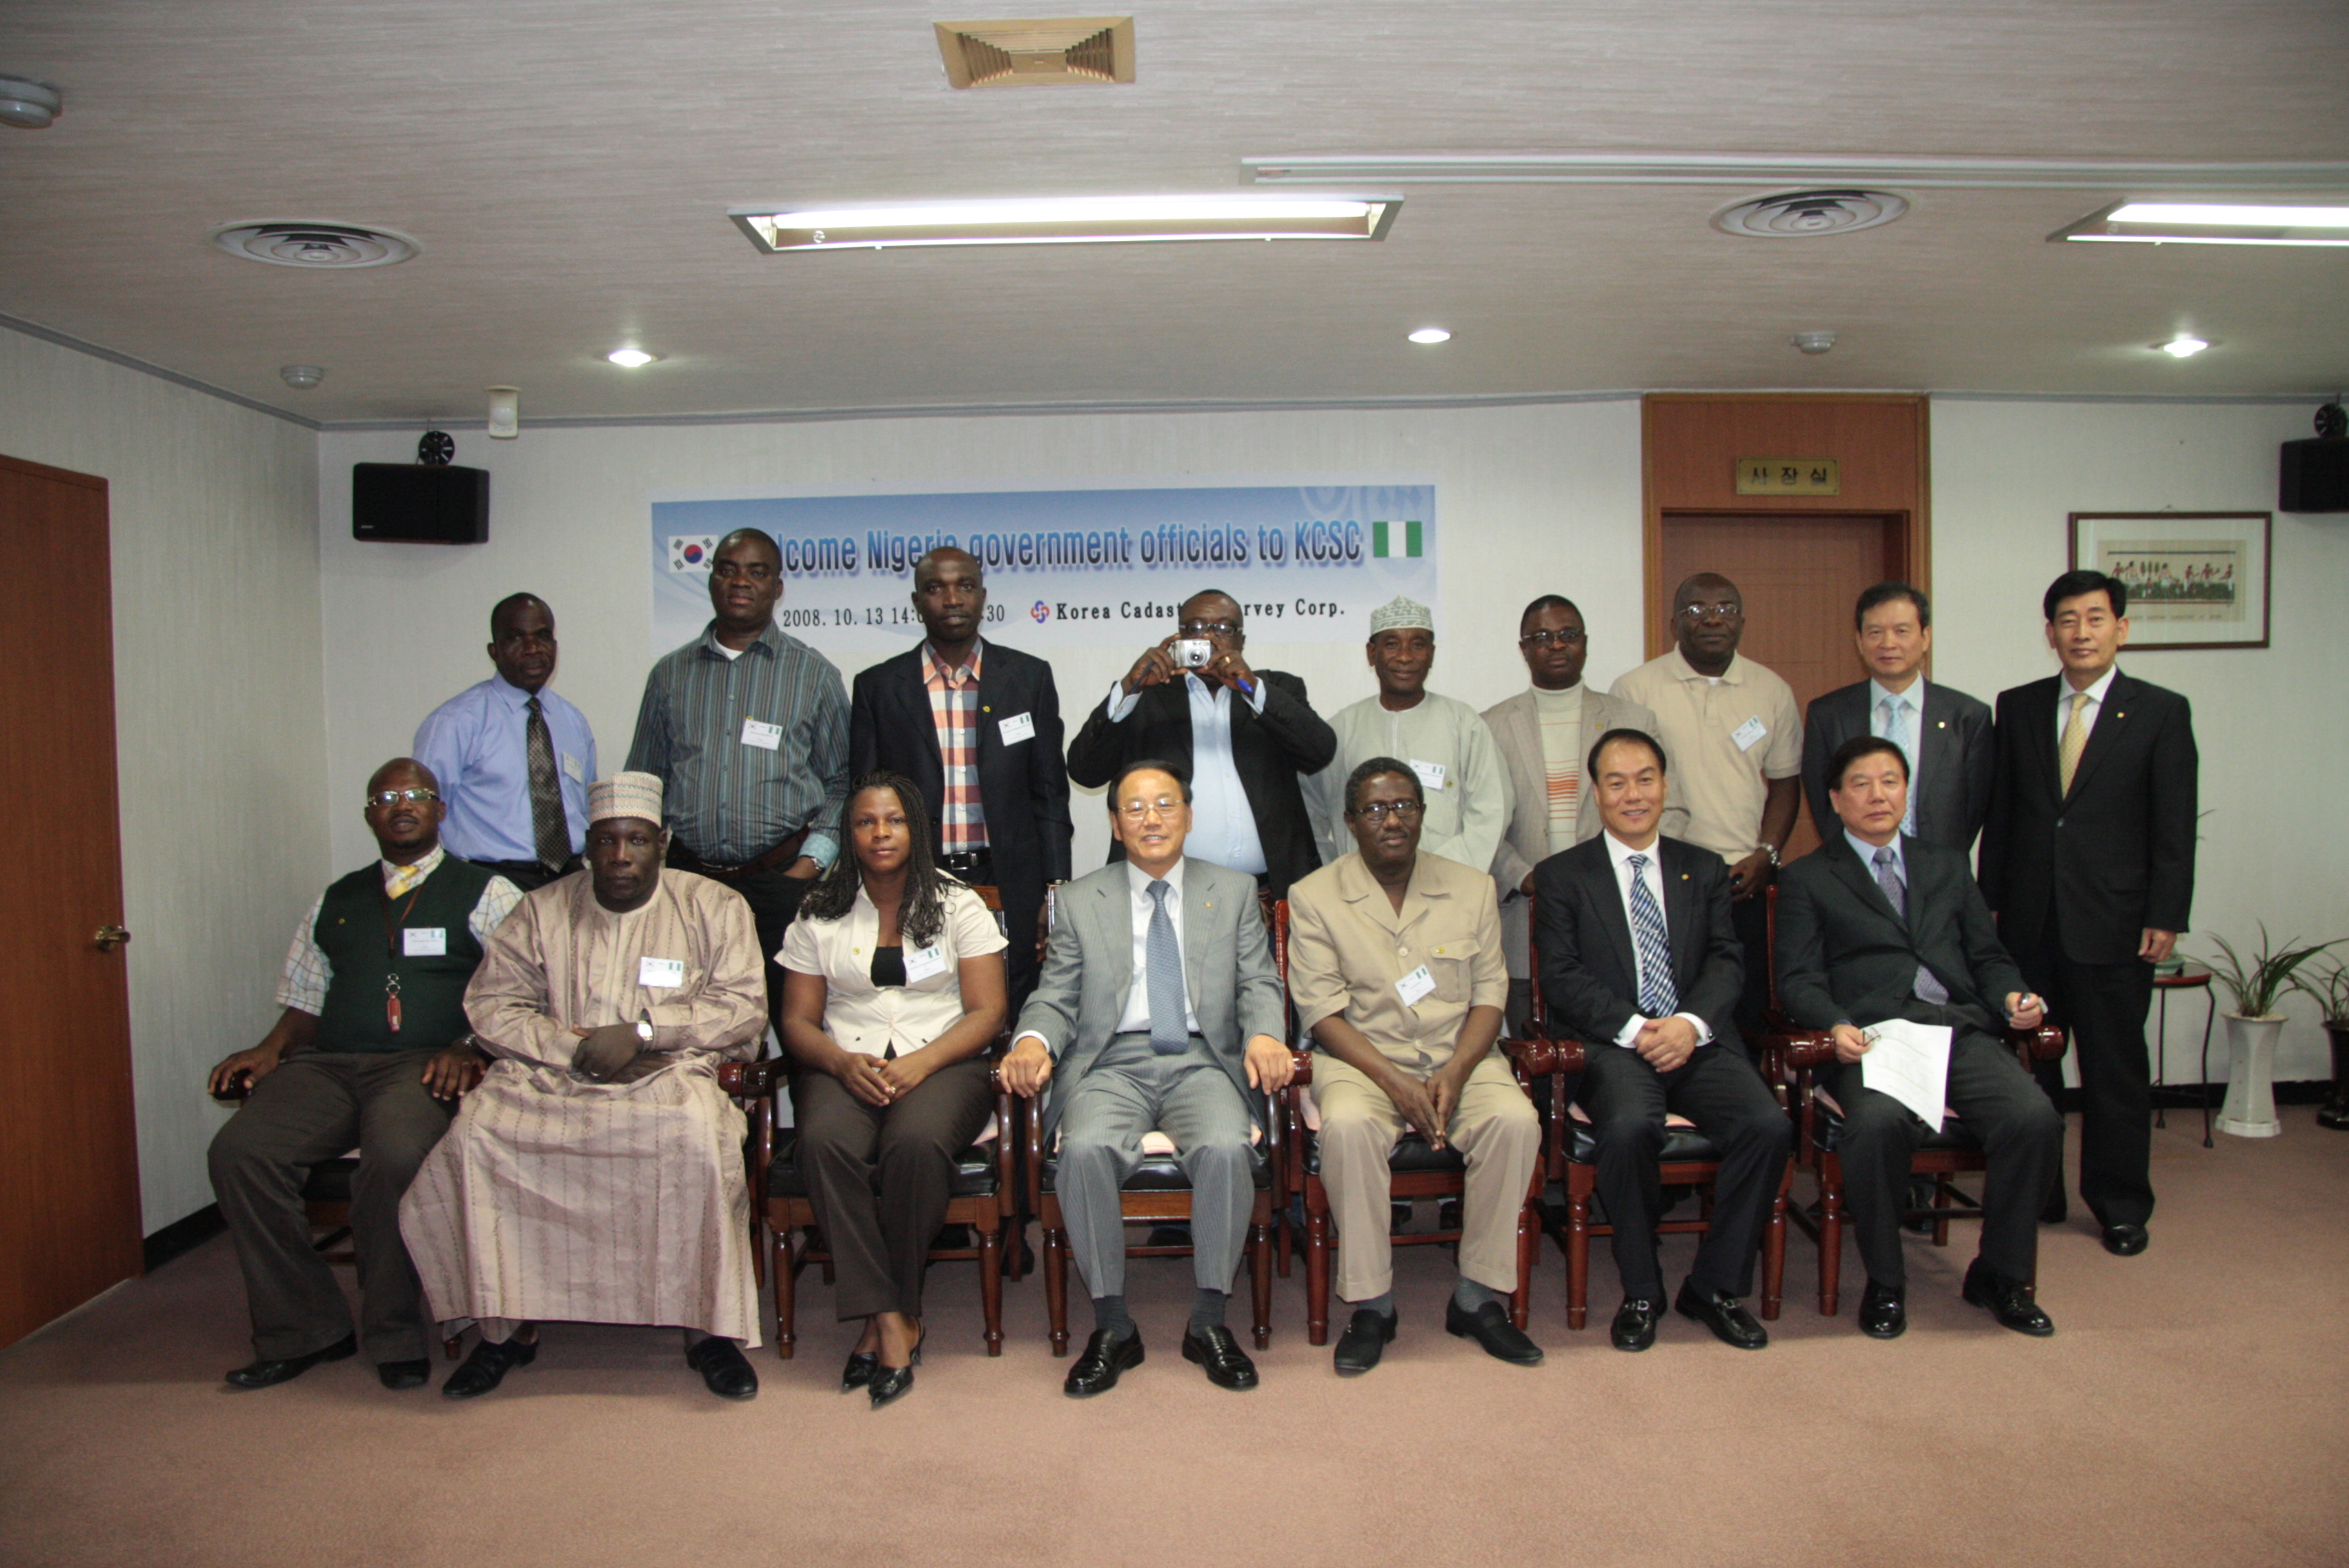 나이지리아 공무원 내방 (2008. 10)사진